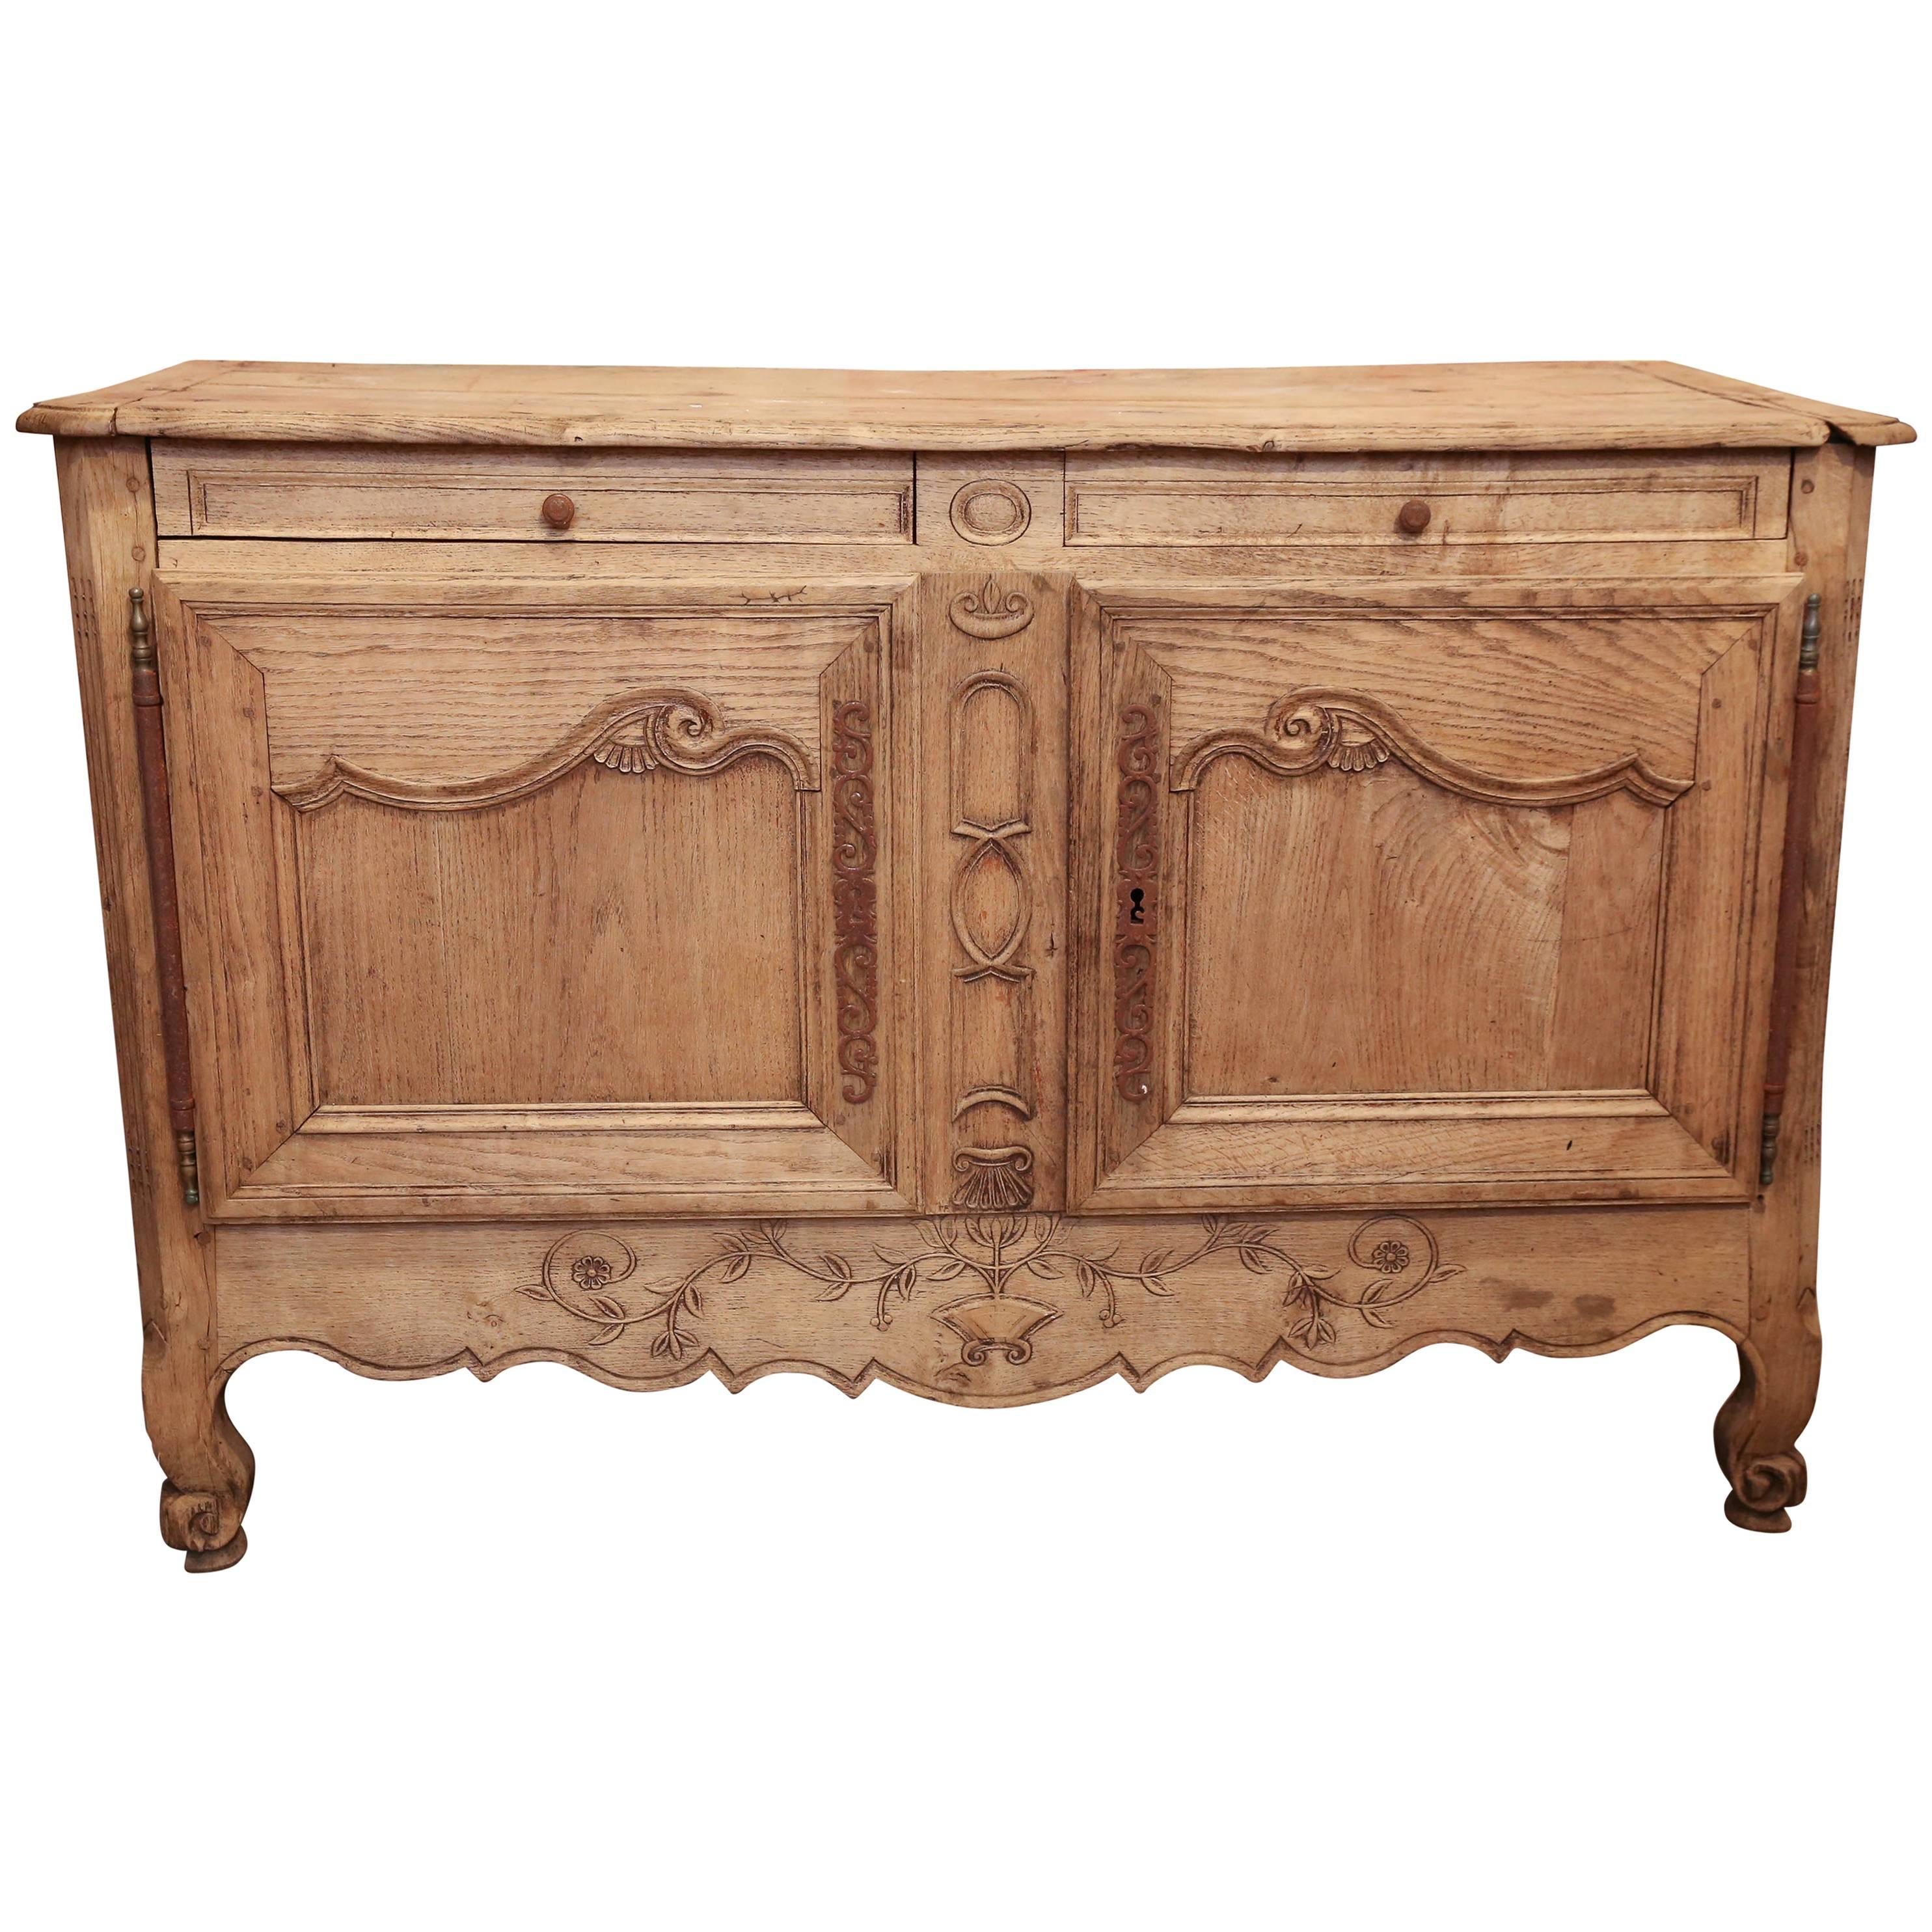 Antique French Oak Sideboard Buffet Cabinet